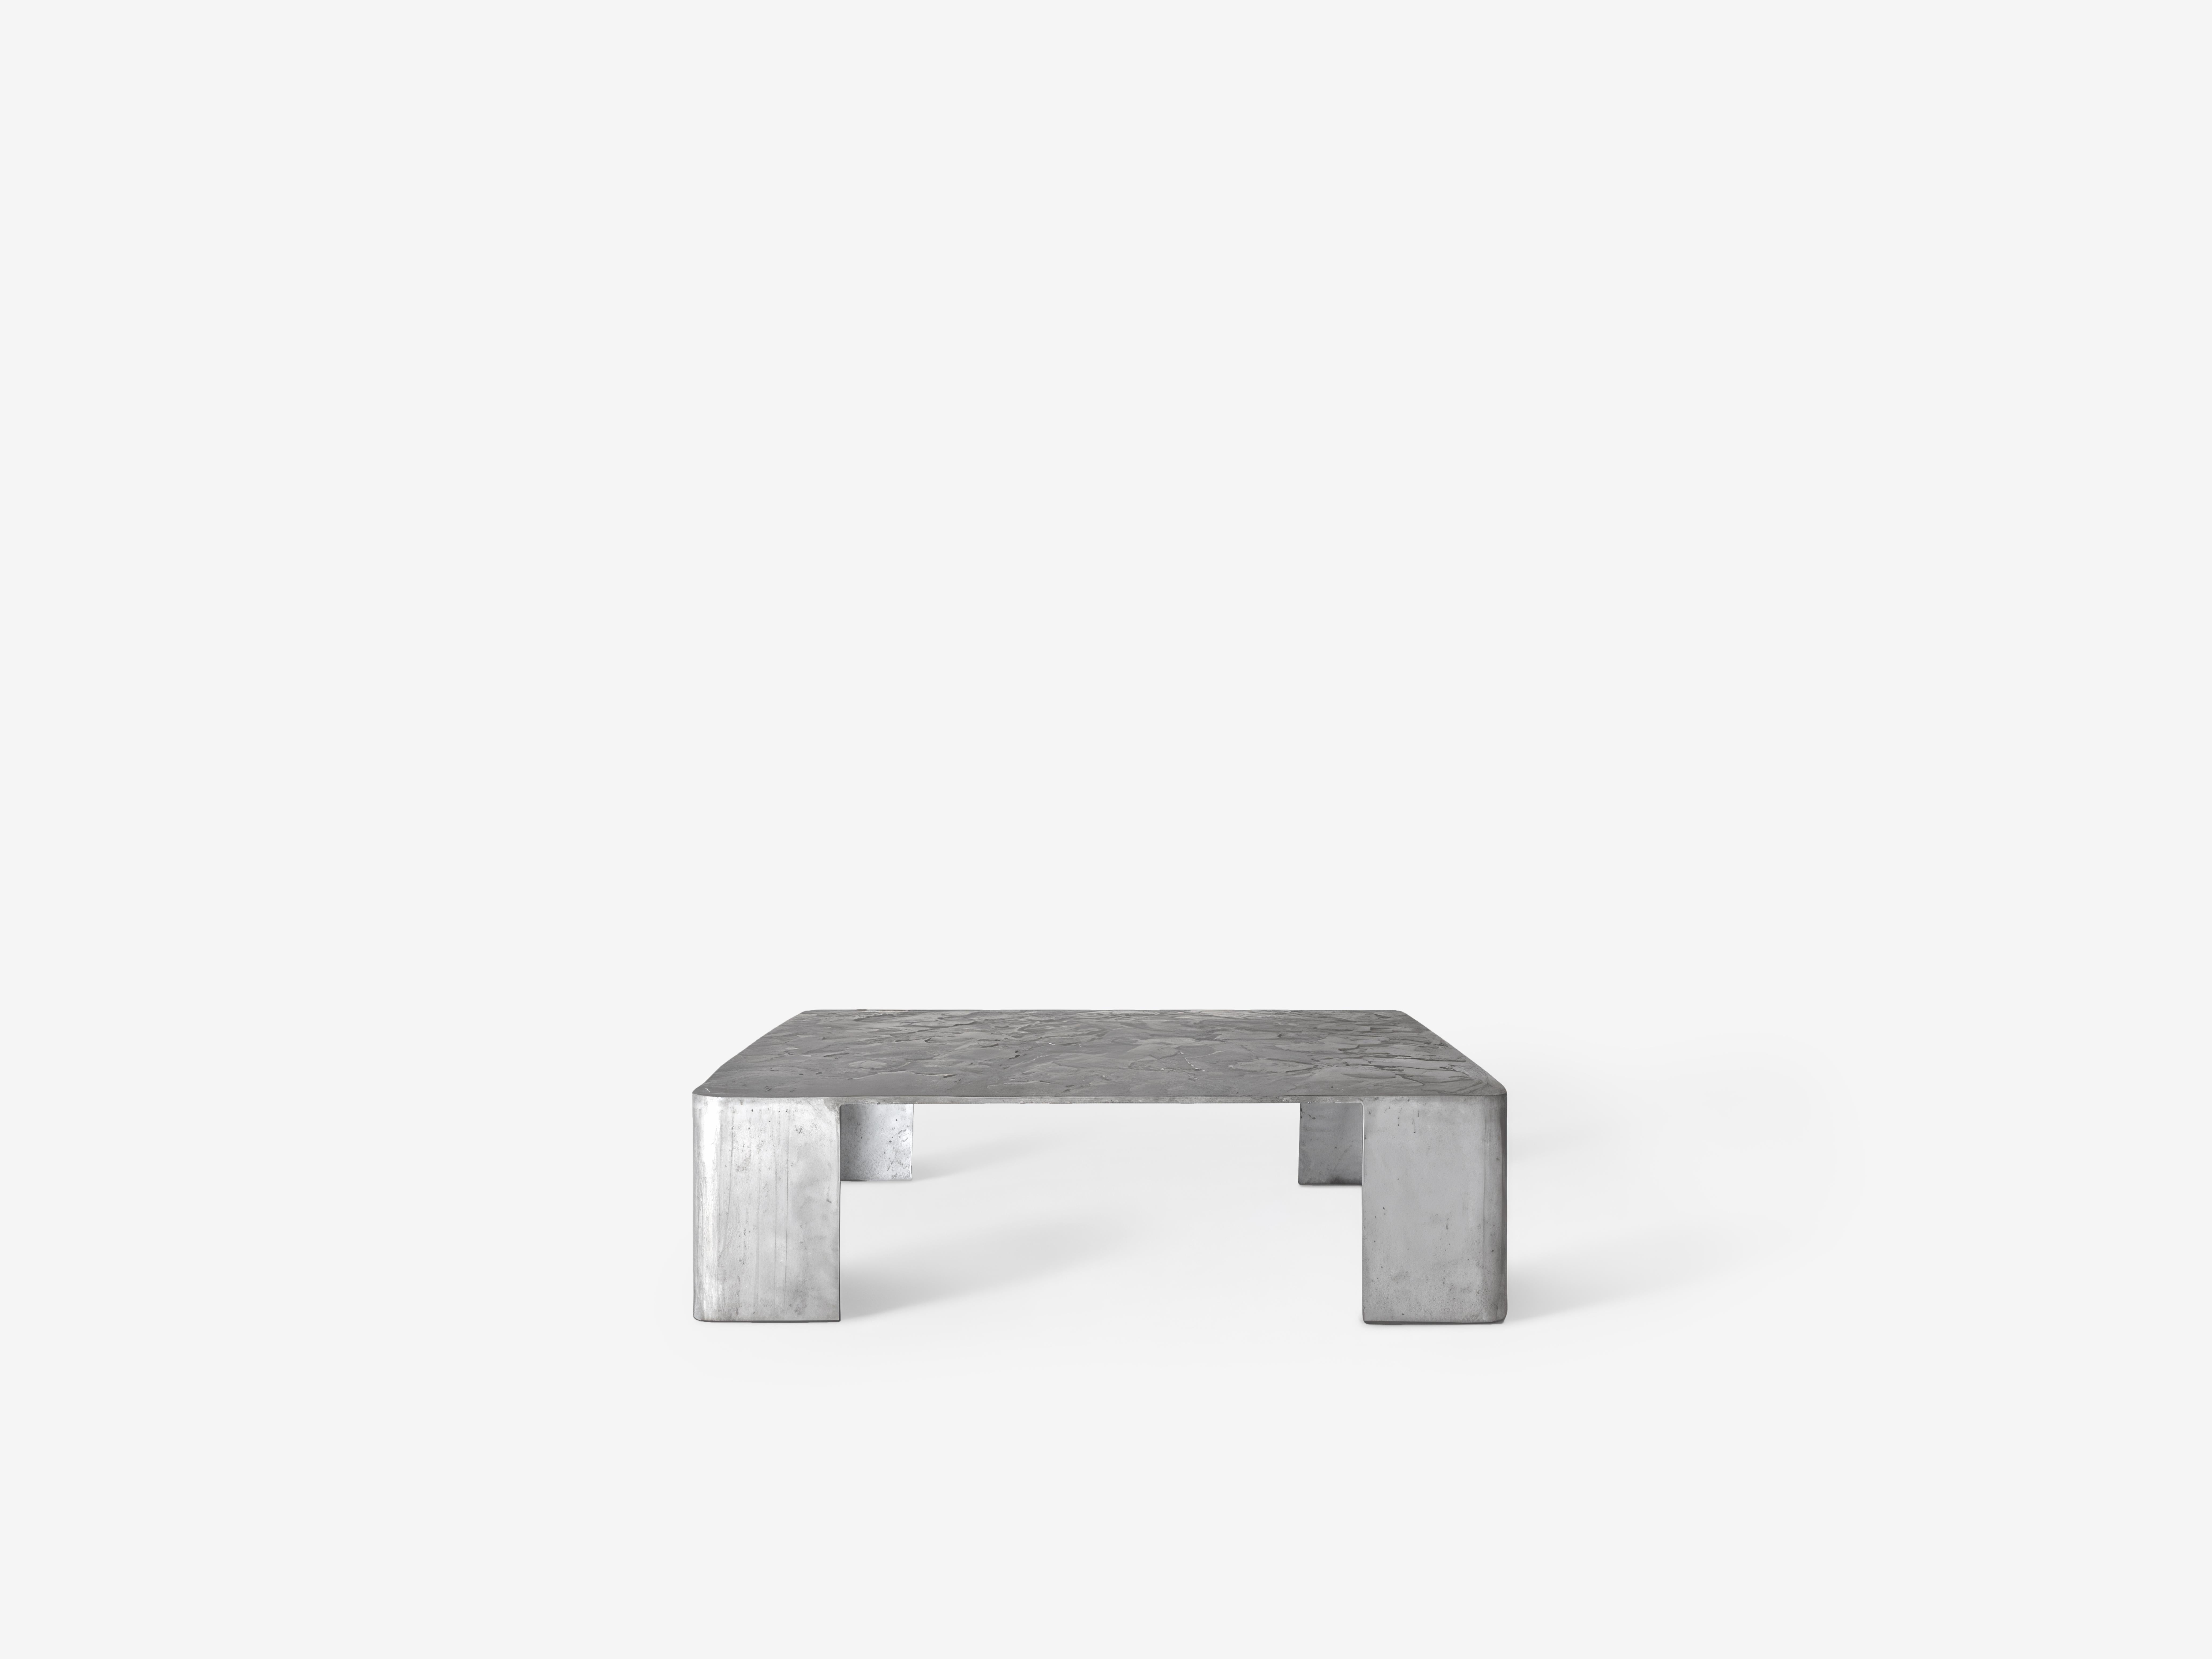 Table basse Paulín par OHLA STUDIO
Dimensions : D 110 x L 110 x H 30 cm 
MATERIAL : Aluminium brossé.
Poids : 48 kg

C'est une série de conversations nocturnes, avec des gouttes de cire sur le sol en bois,
éclairant la casita par une chaude nuit